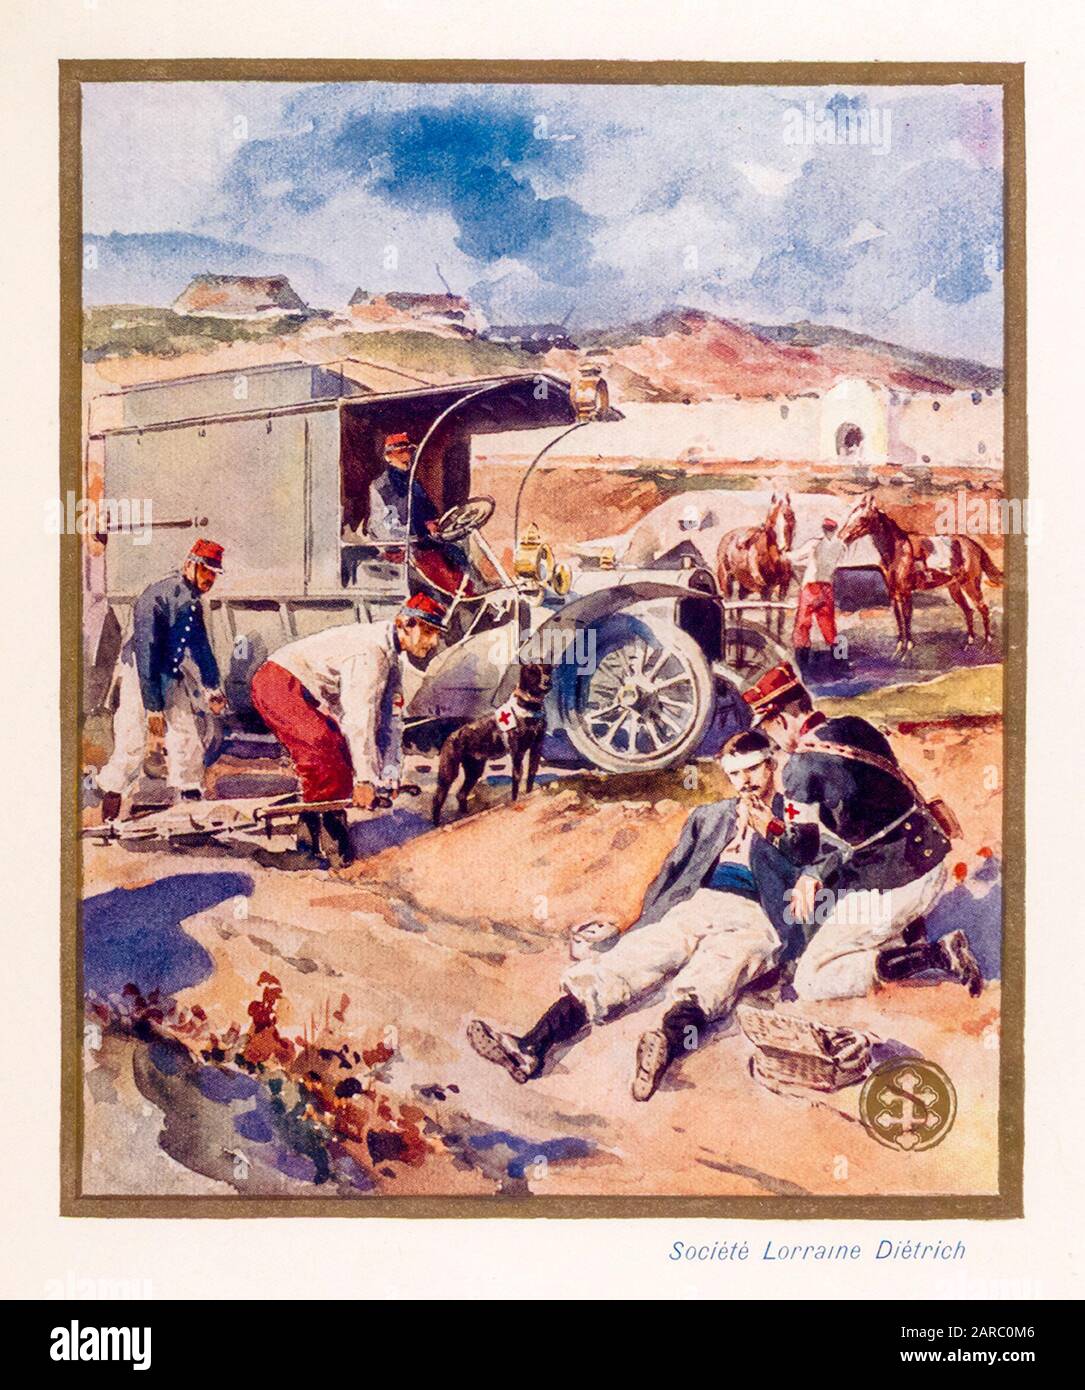 Lorraine Diétrich automobiles utilisée comme Ambulance pendant la guerre, illustration promotionnelle 1909 Banque D'Images